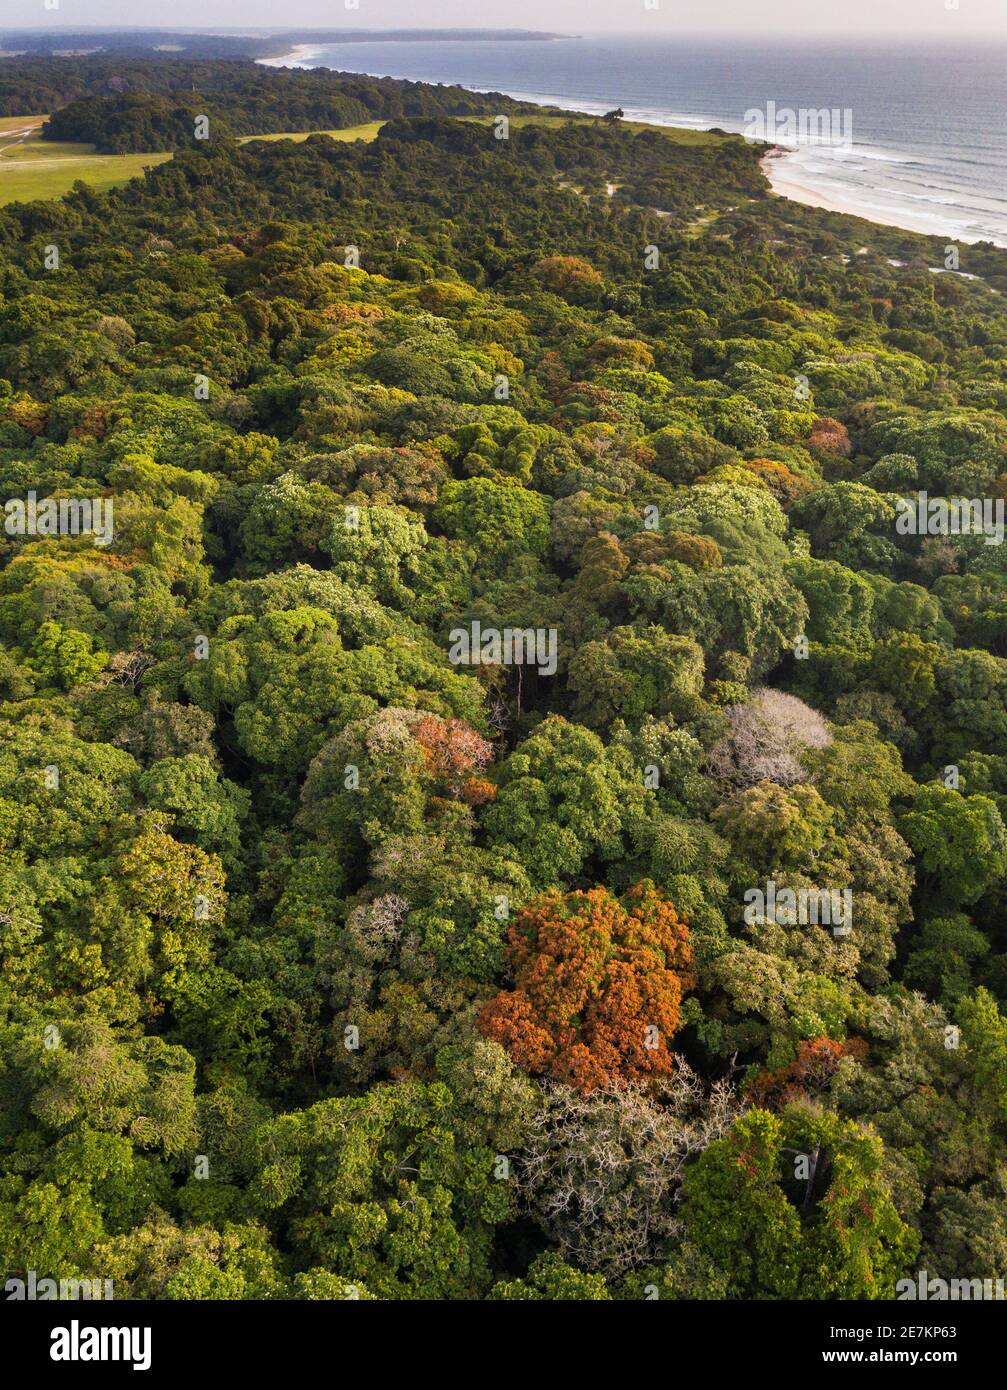 Regenwald an der Atlantikküste, in der Nähe von Omboue, Gabun, Zentralafrika. Stockfoto